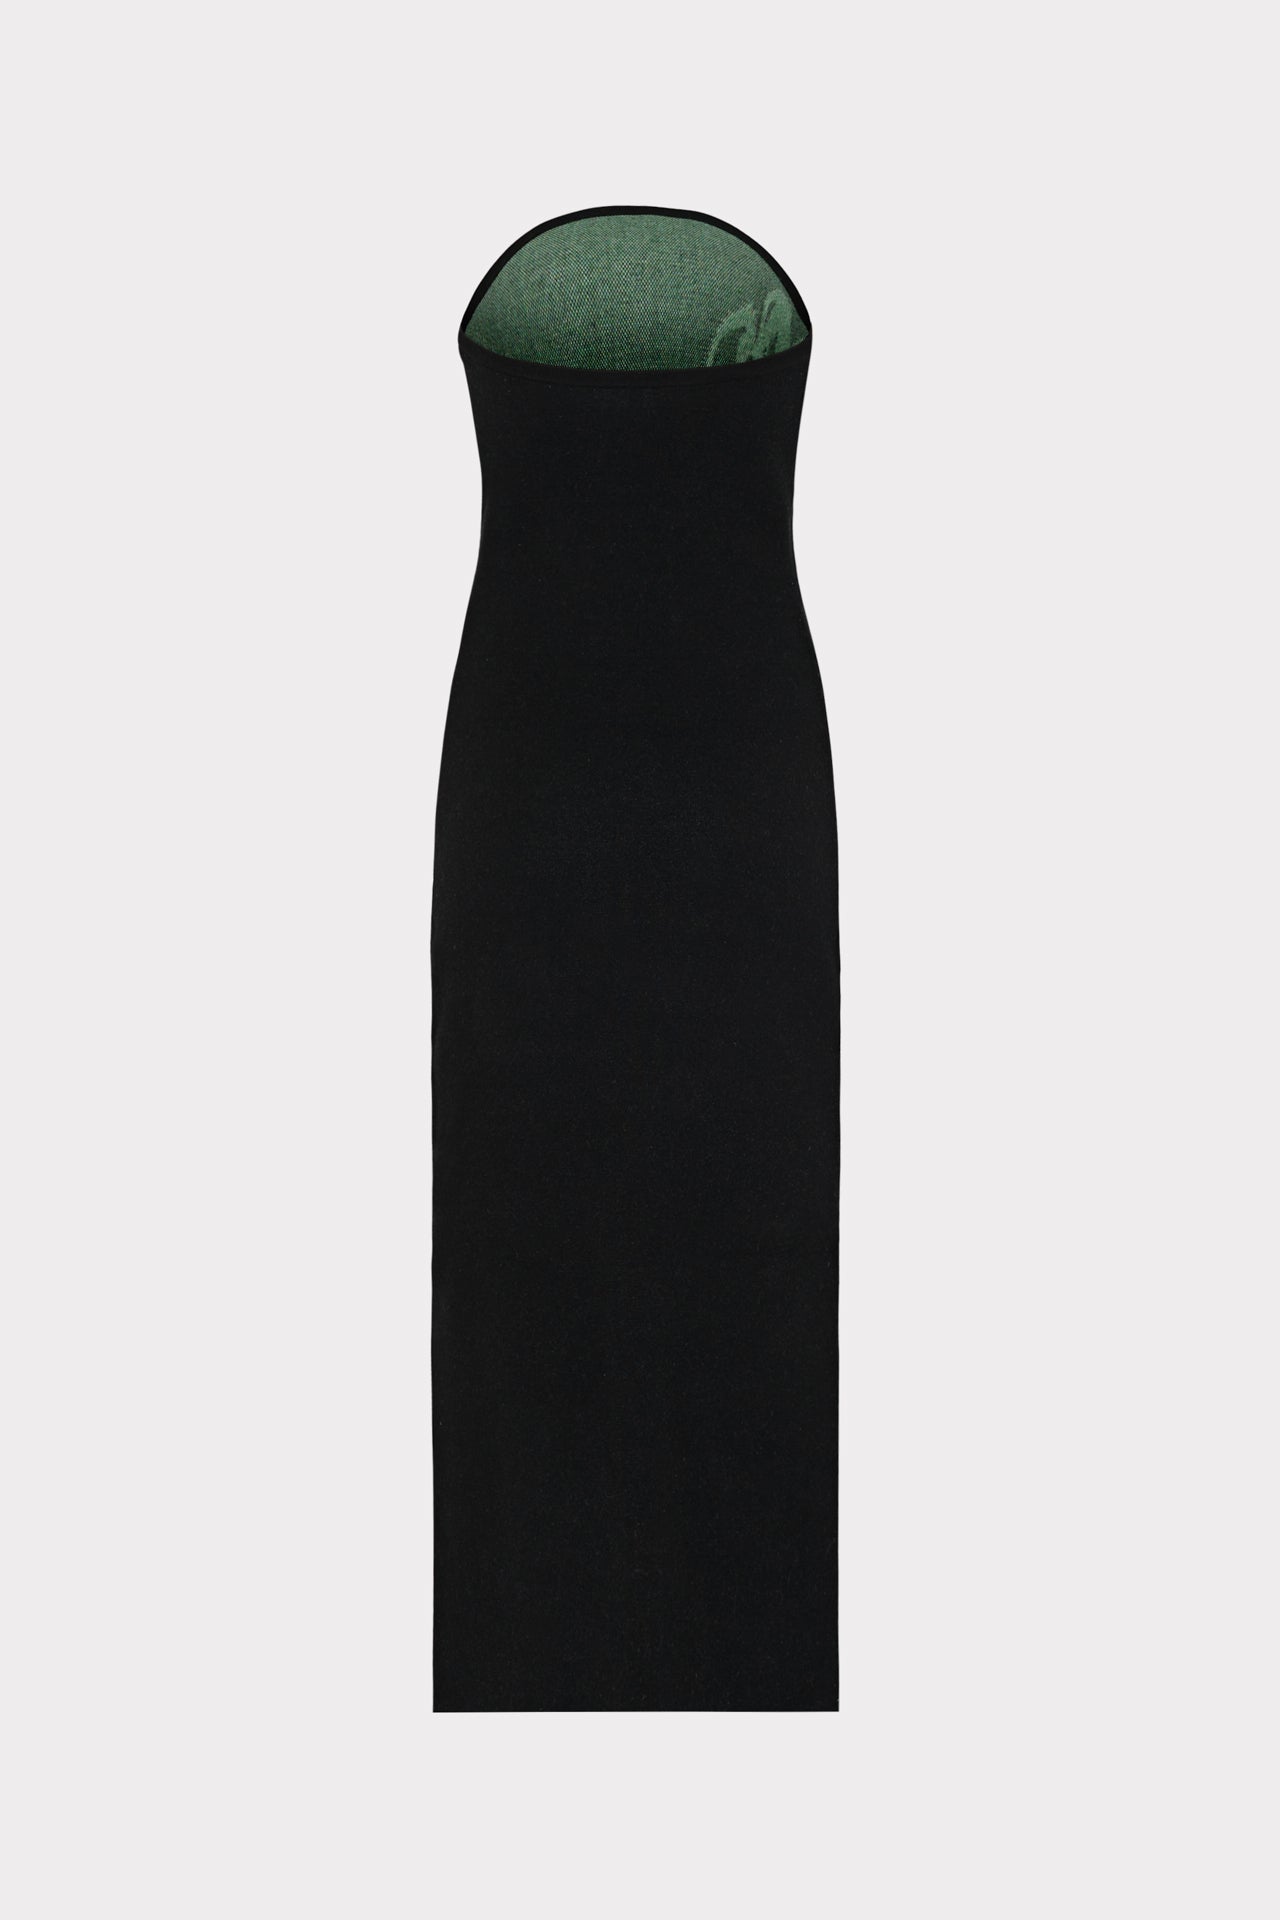 Floral Jacquard Strapless Midi Dress in Black Multi | MILLY